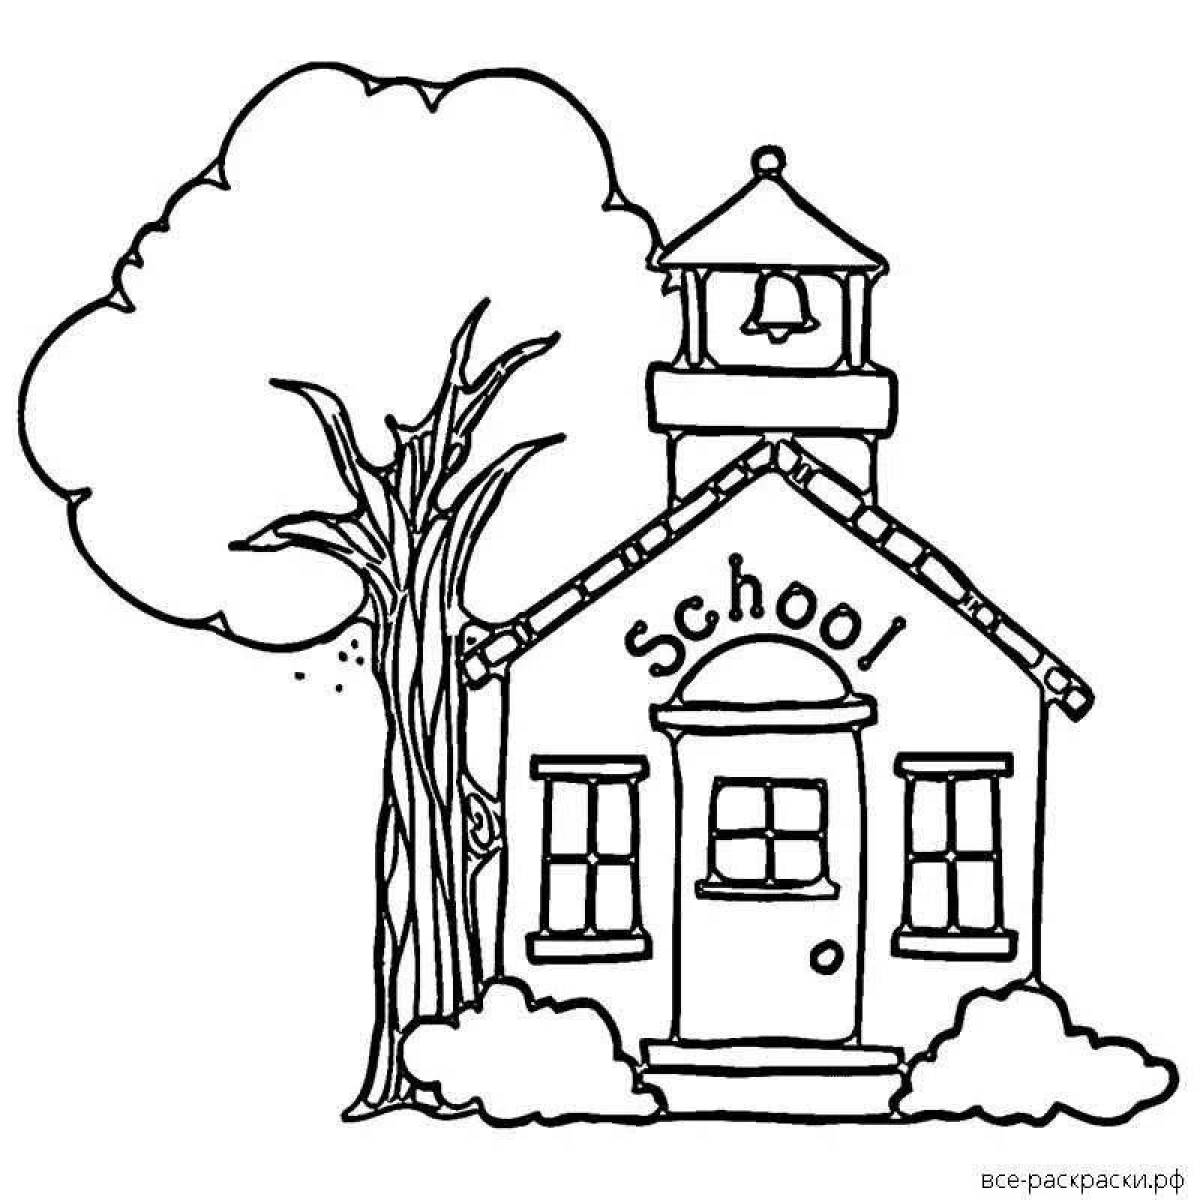 Cute school building coloring page